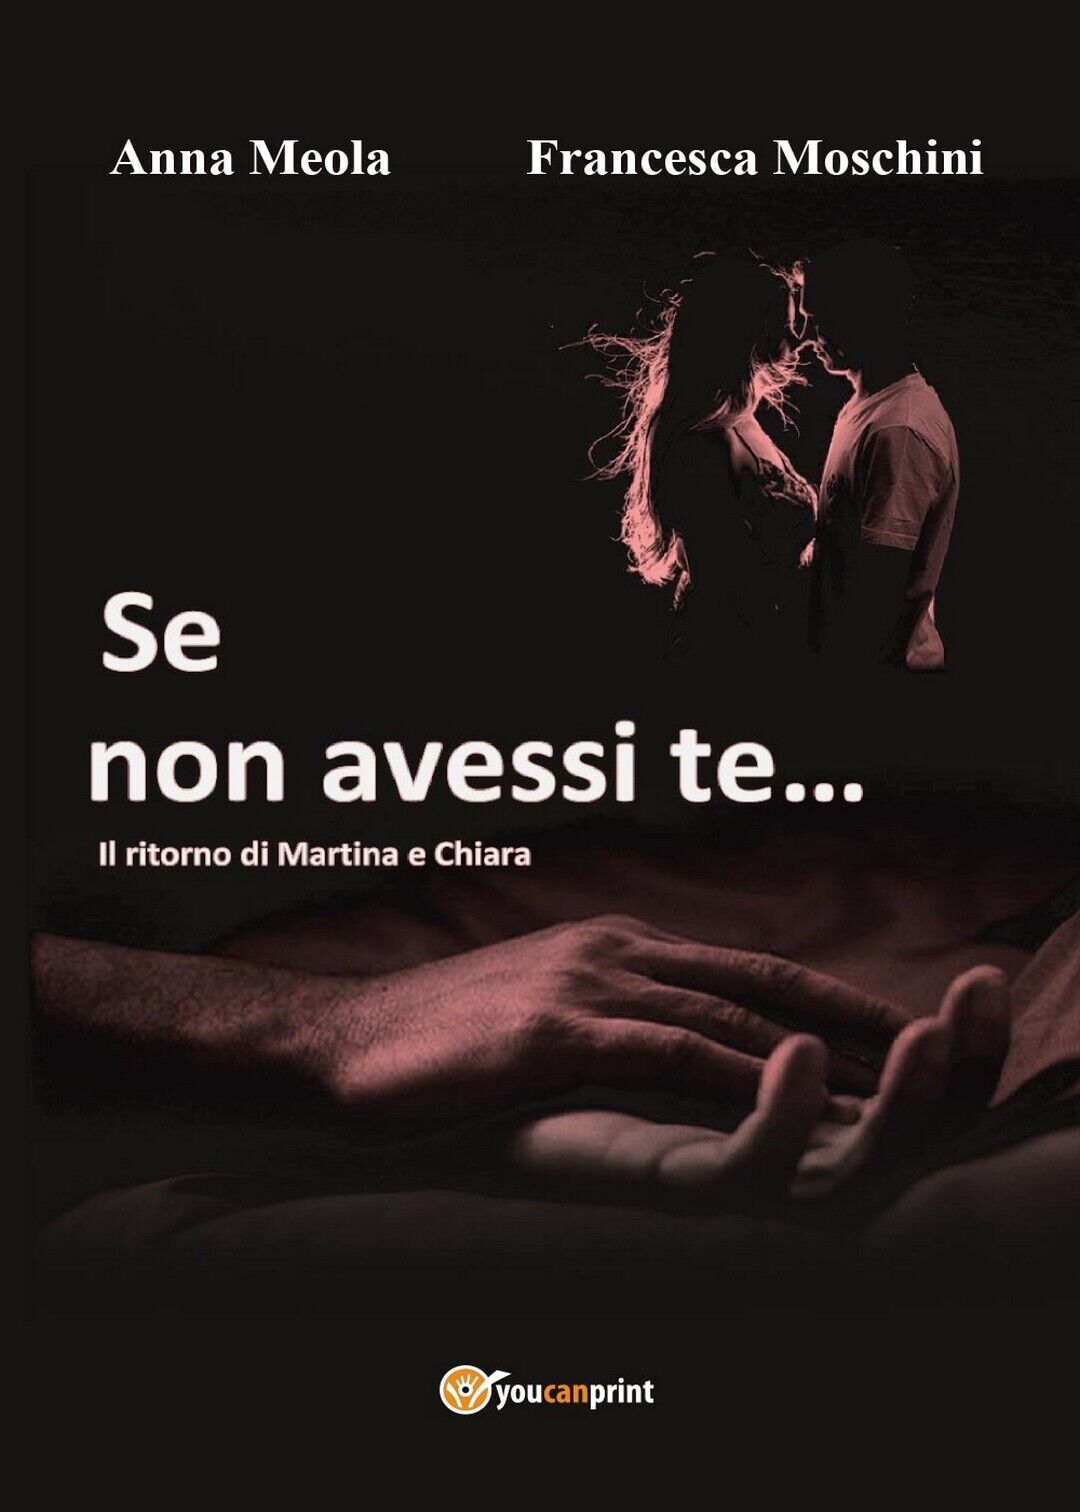 Se non avessi te... Il ritorno di Martina e Chiara (Moschini, Meola, 2017)